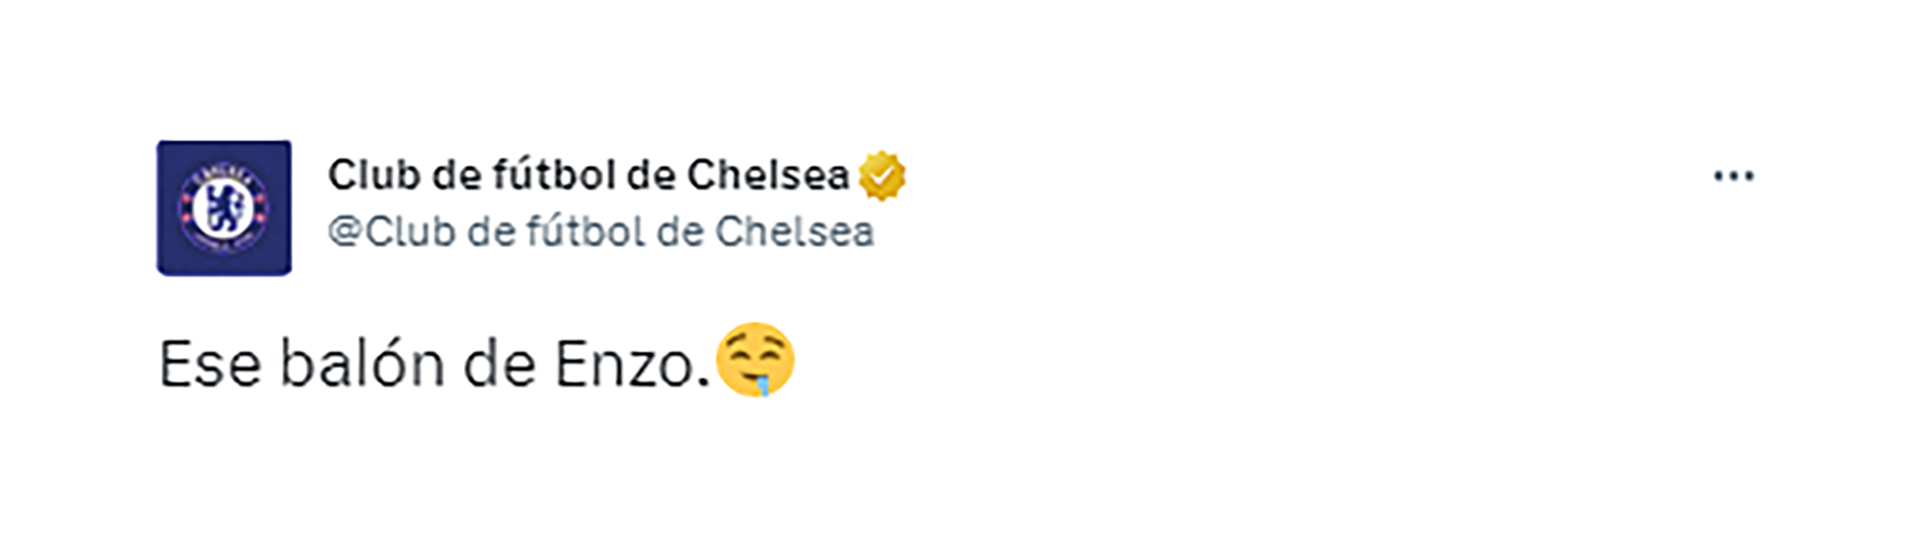 Las redes oficiales del Chelsea se derritieron ante el talento de Enzo Fernández